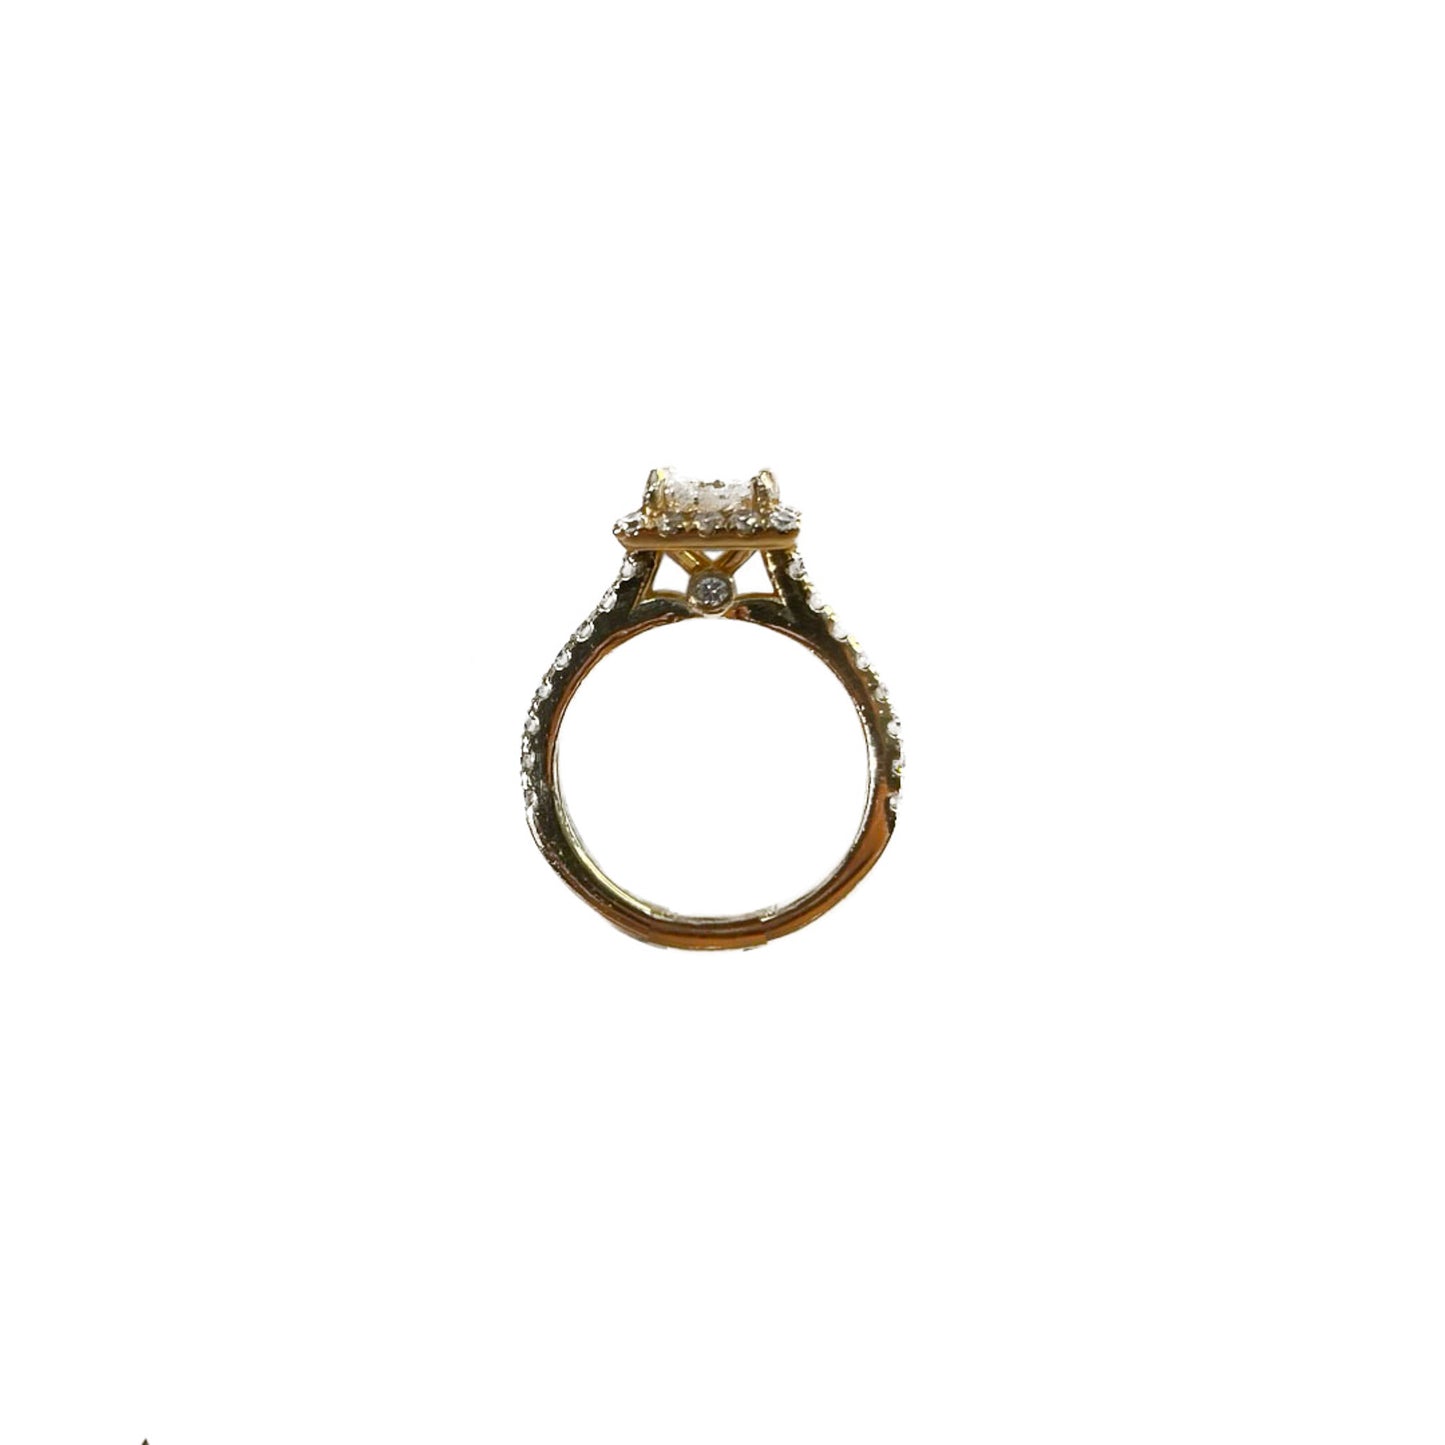 Princess Cut Halo Engagement Ring - 2.06 CT